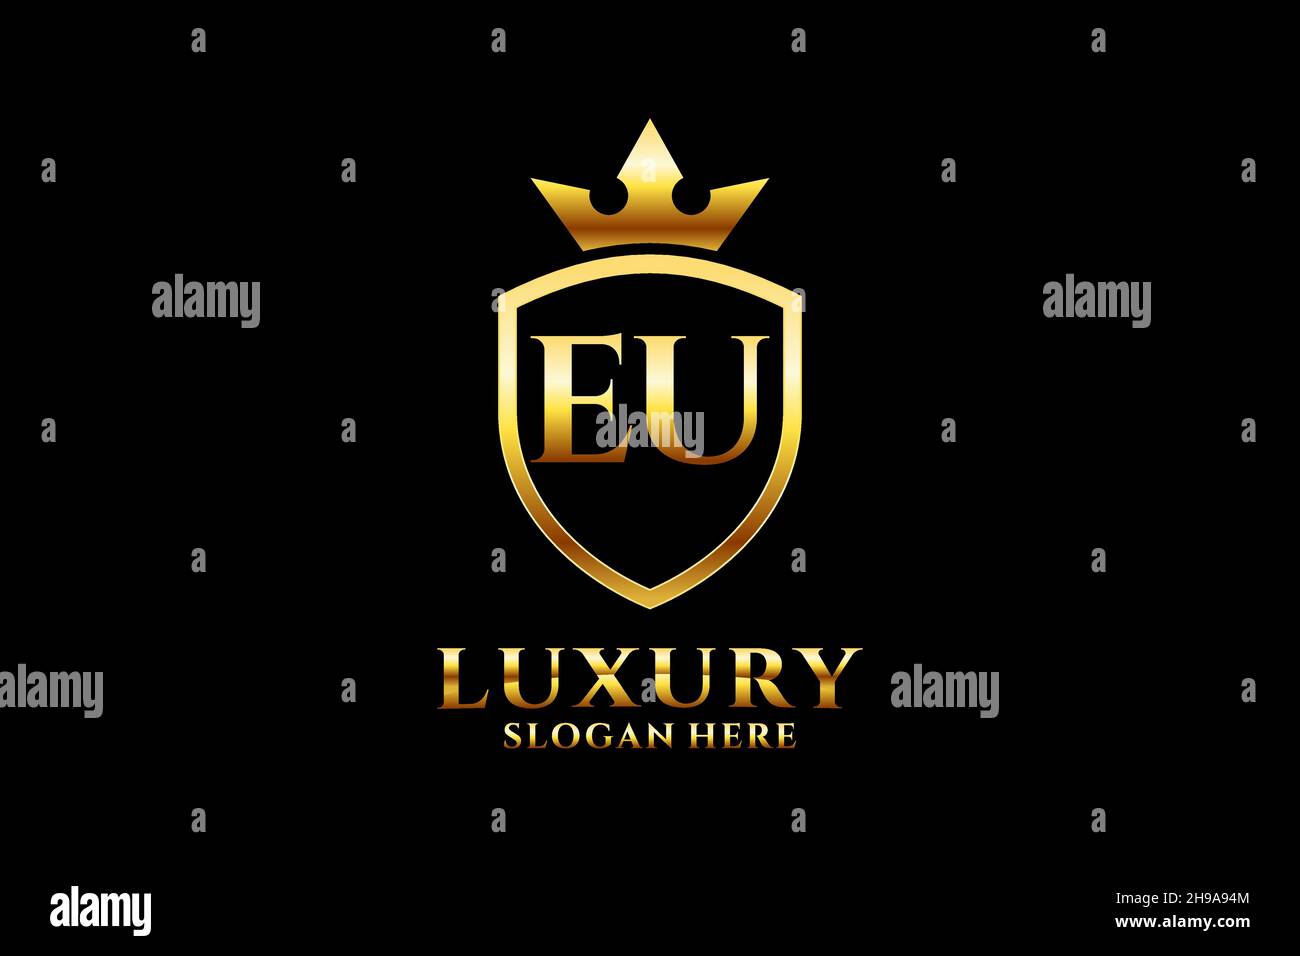 Modèle élégant de monogramme ou de badge de luxe européen avec rouleaux et couronne royale - parfait pour les projets de marque de luxe Illustration de Vecteur